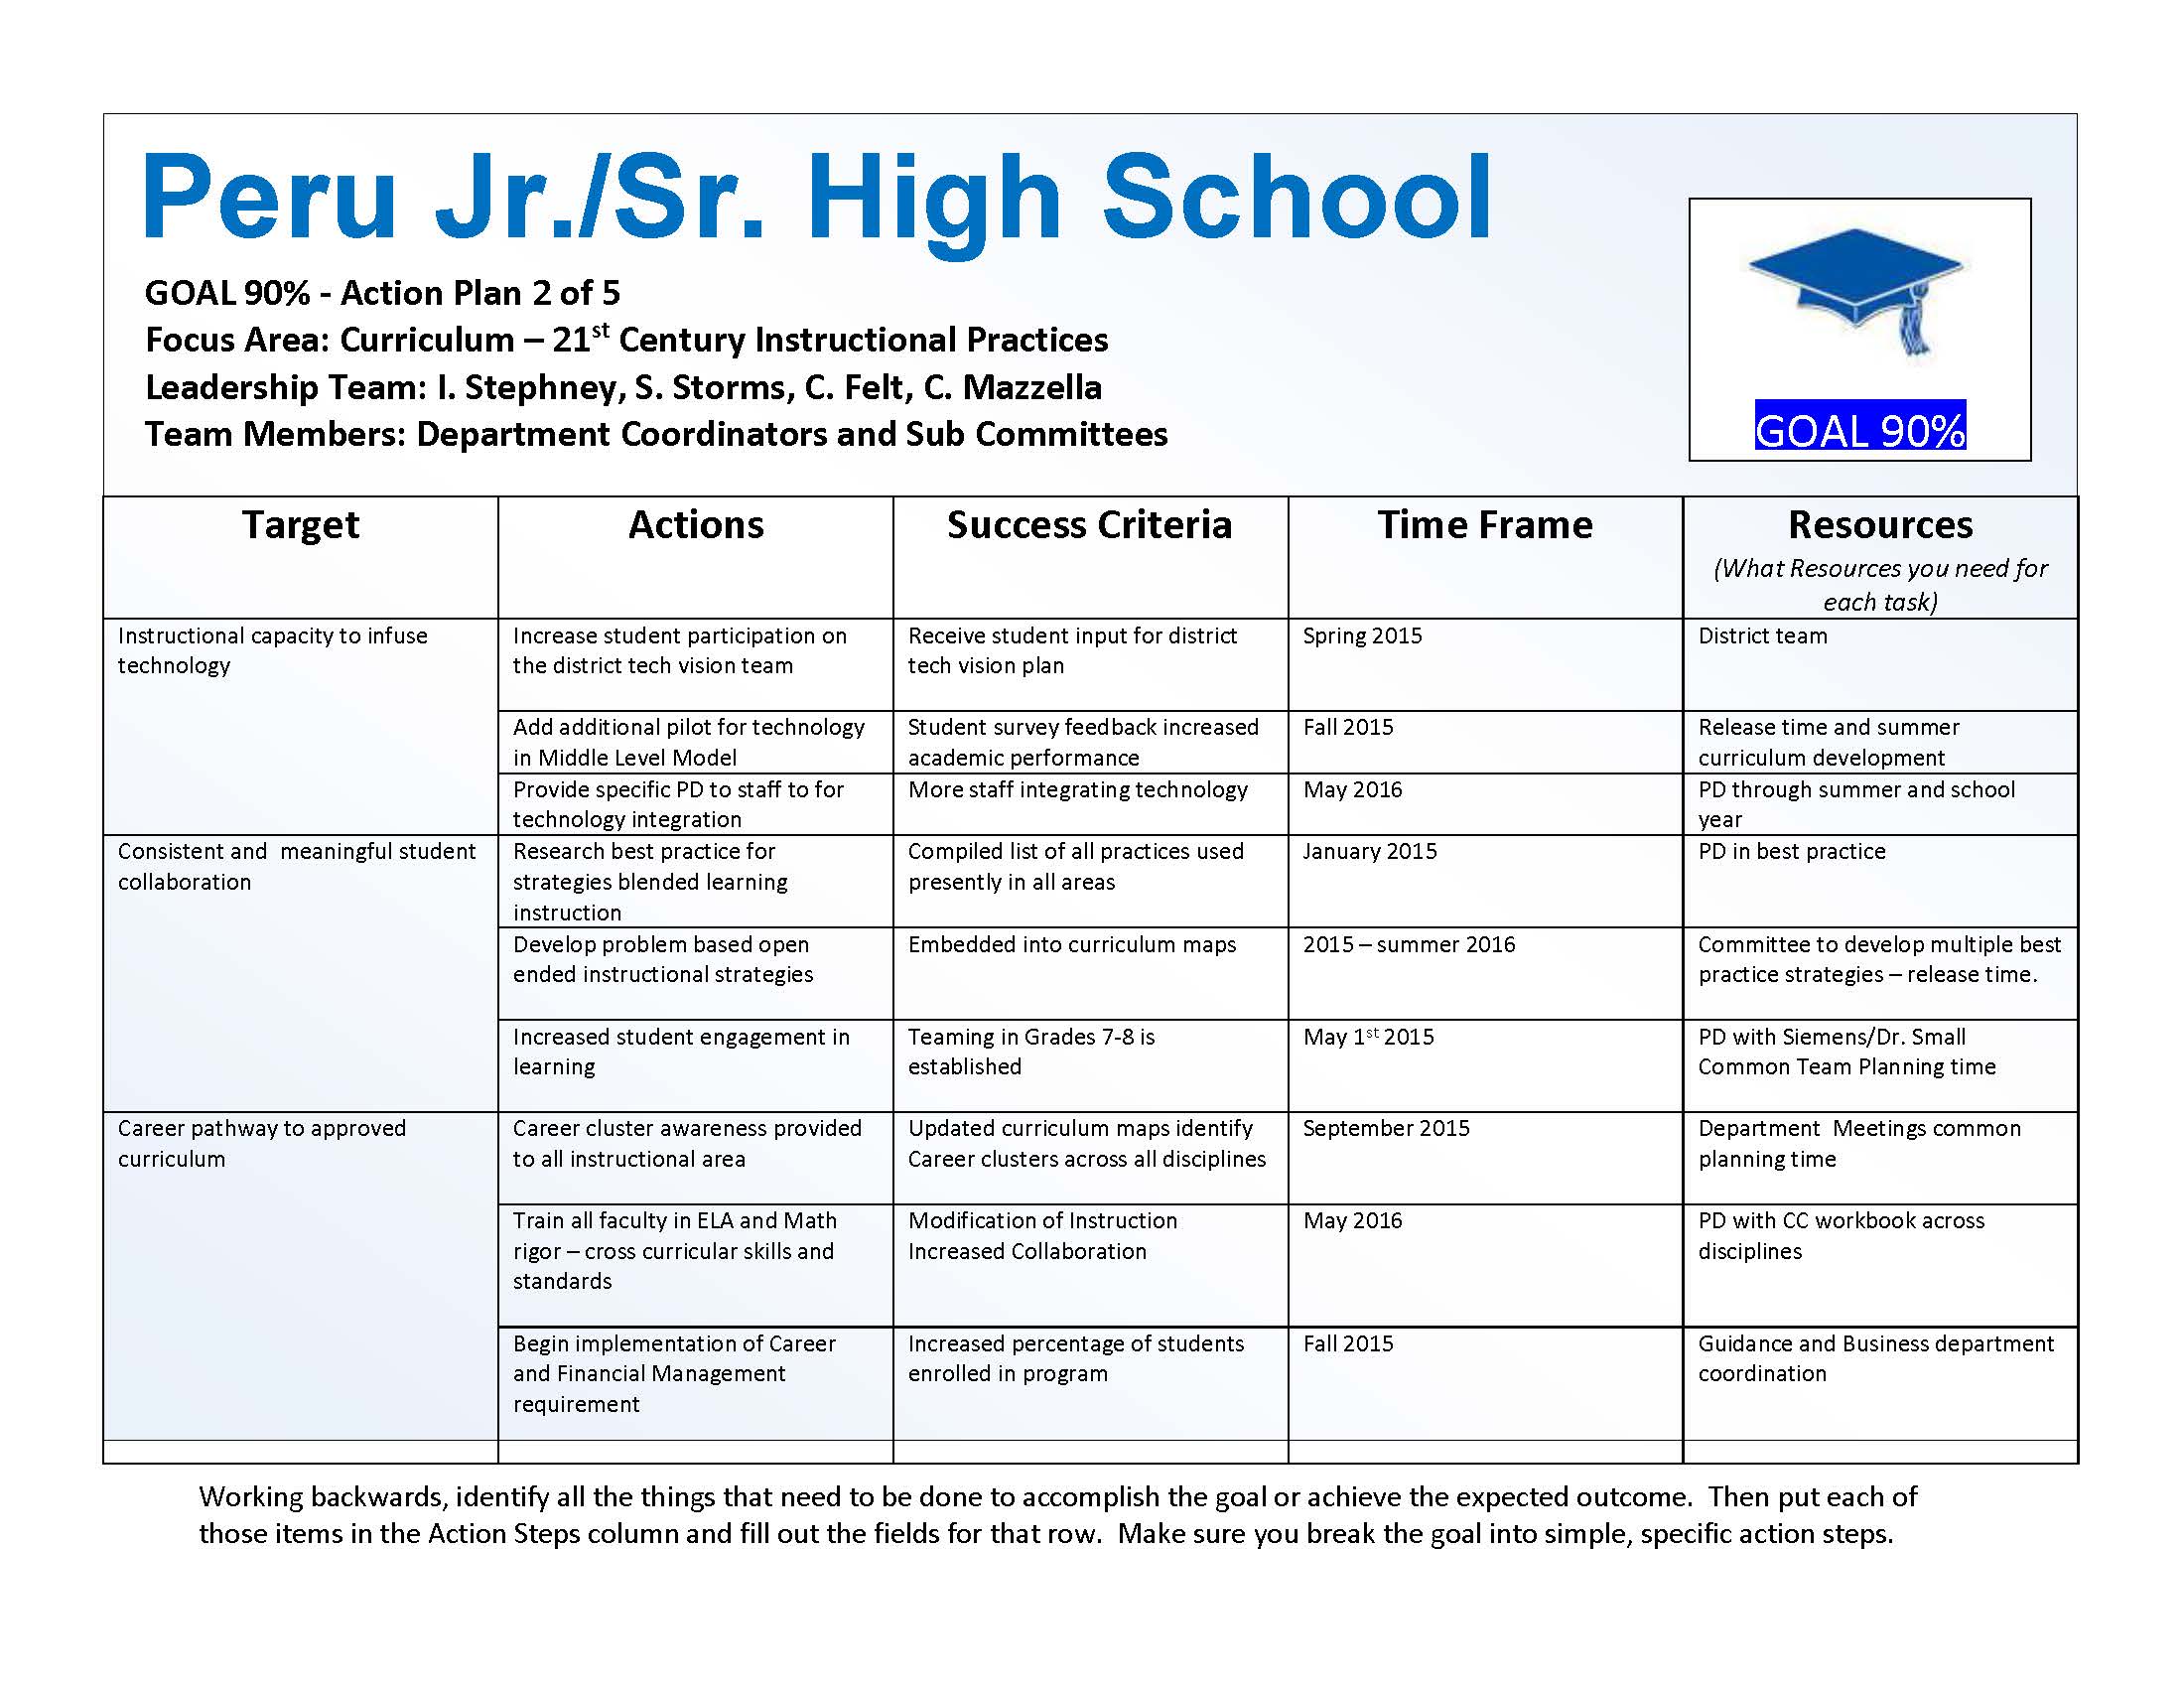 Peru Jr/Sr High School Building Goals